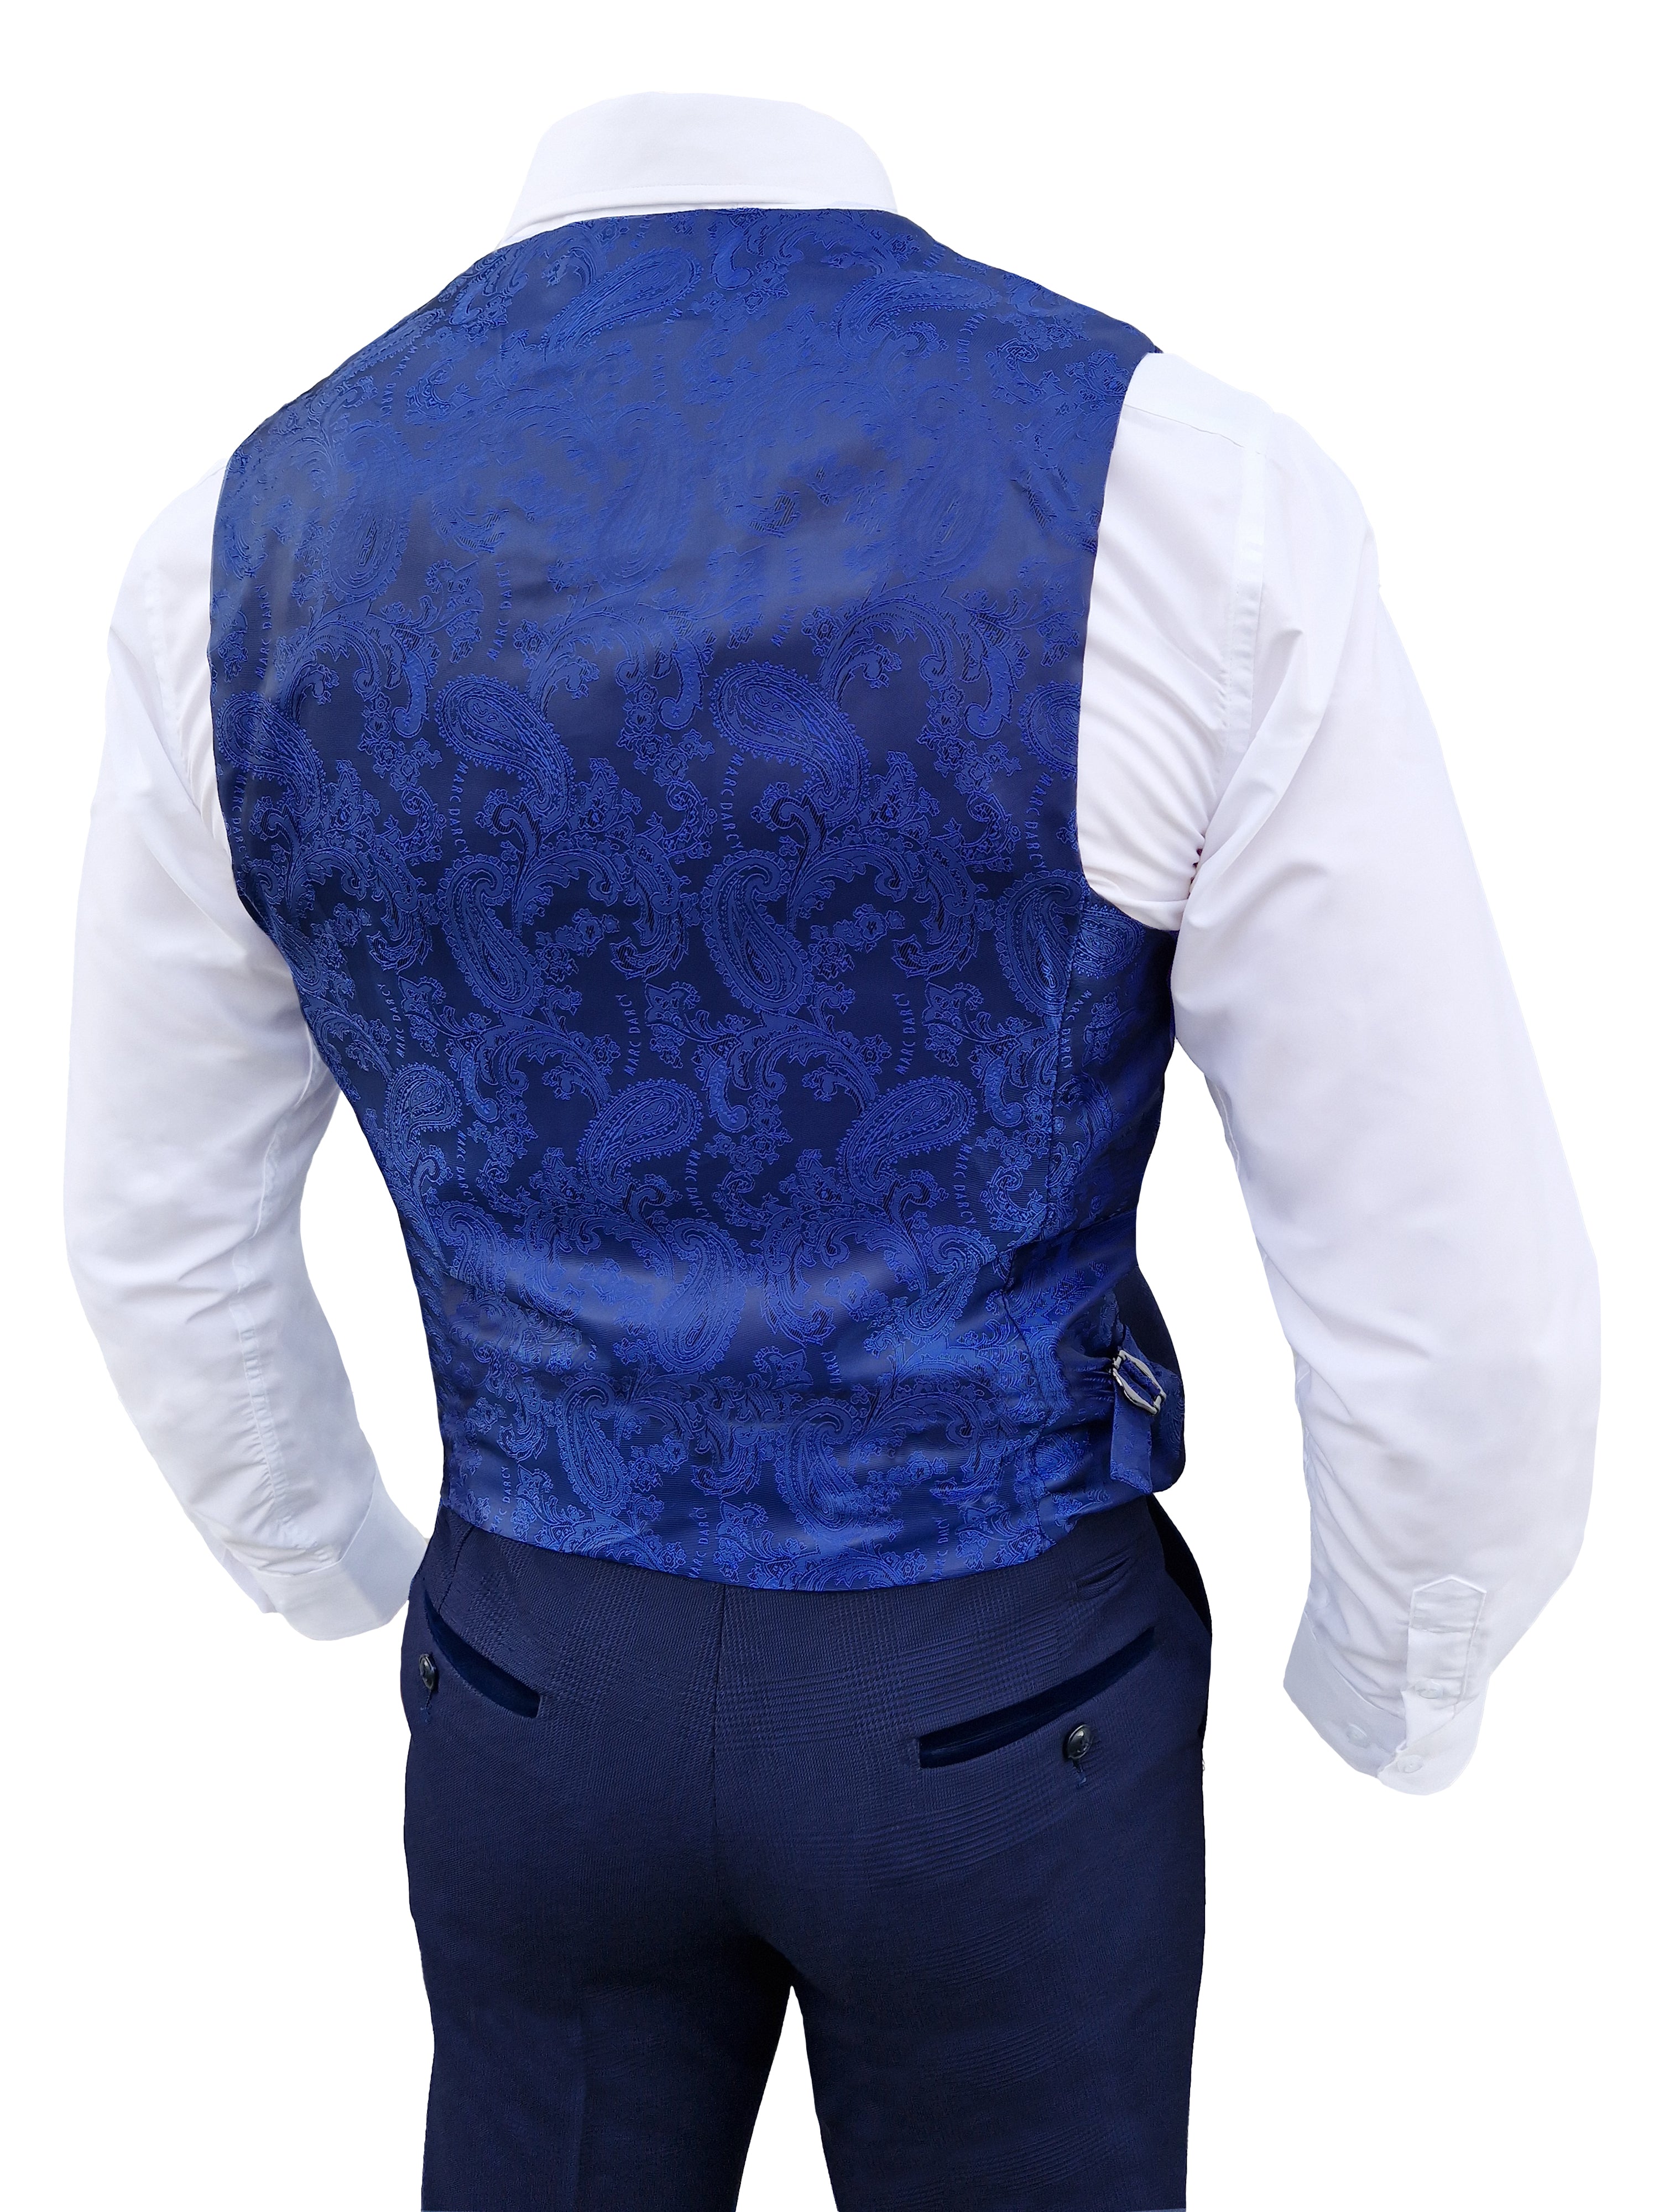 Costume pour homme à carreaux bleu foncé en 3 pièces - Costume Bromley Navy